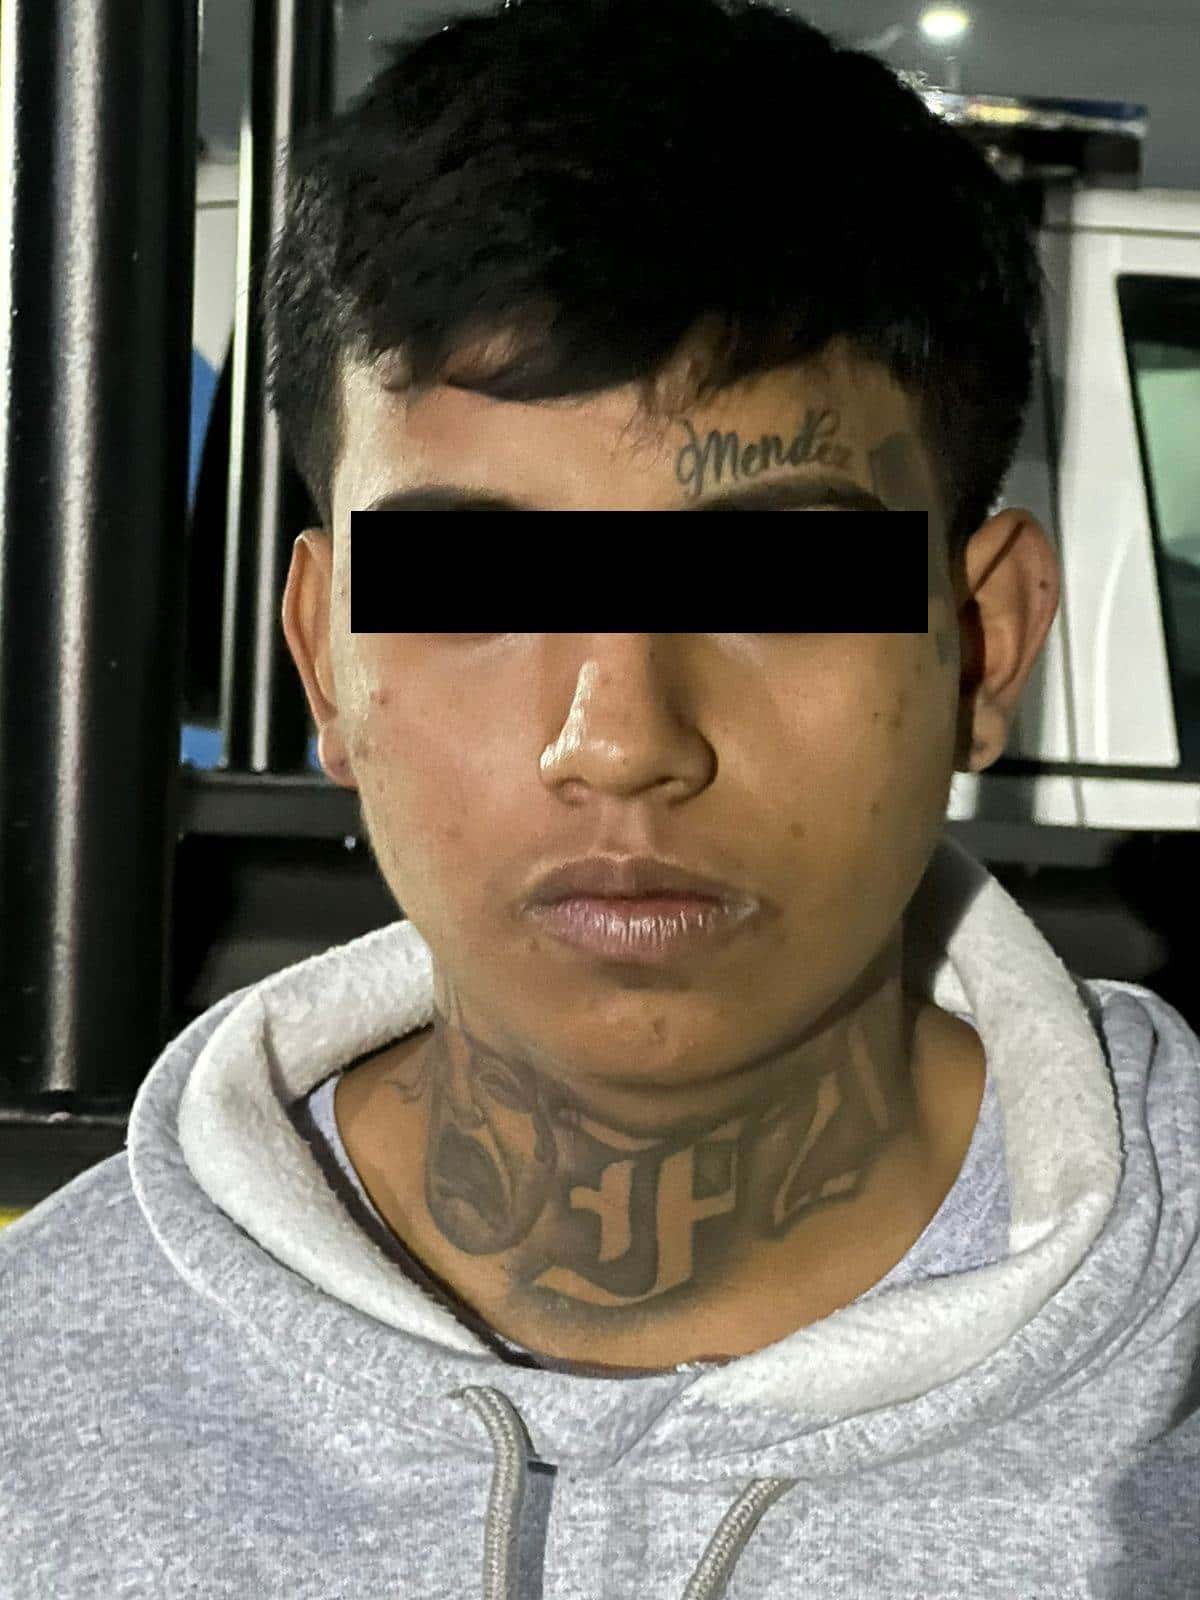 Un joven fue detenido por oficiales de la Policía de Monterrey, cuando presuntamente trataba de abrir un vehículo para robar sus pertenencias, además de que al capturarlo se confirmó que estaba relacionado en por lo menos 20 robos a negocios.